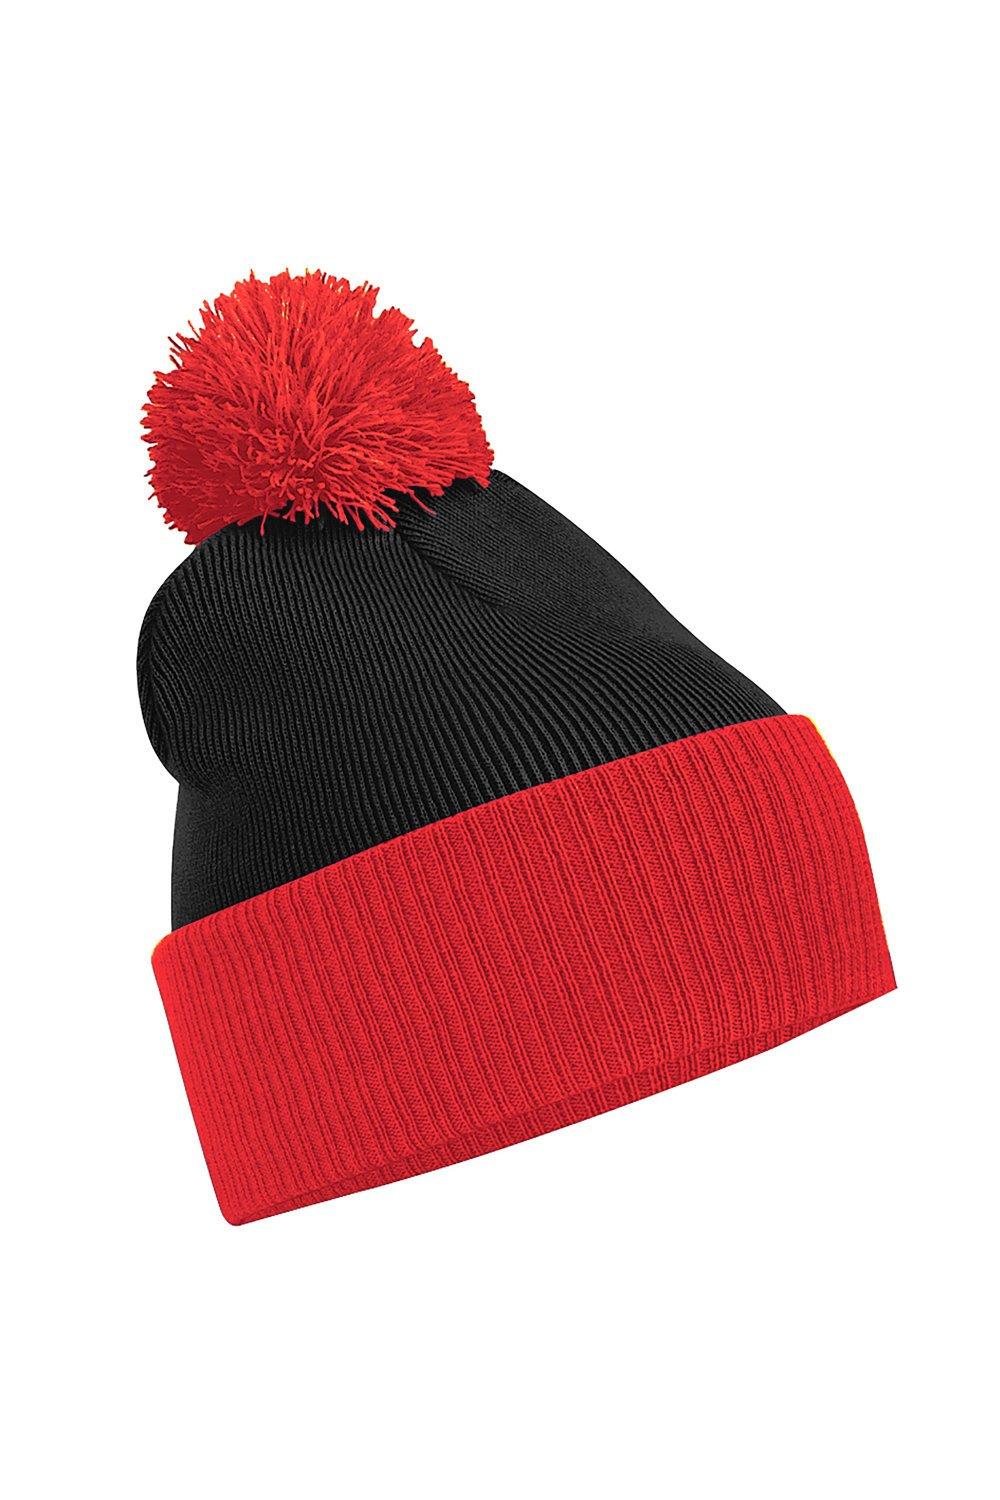 Двухцветная зимняя шапка-бини Snowstar Duo Beechfield, черный